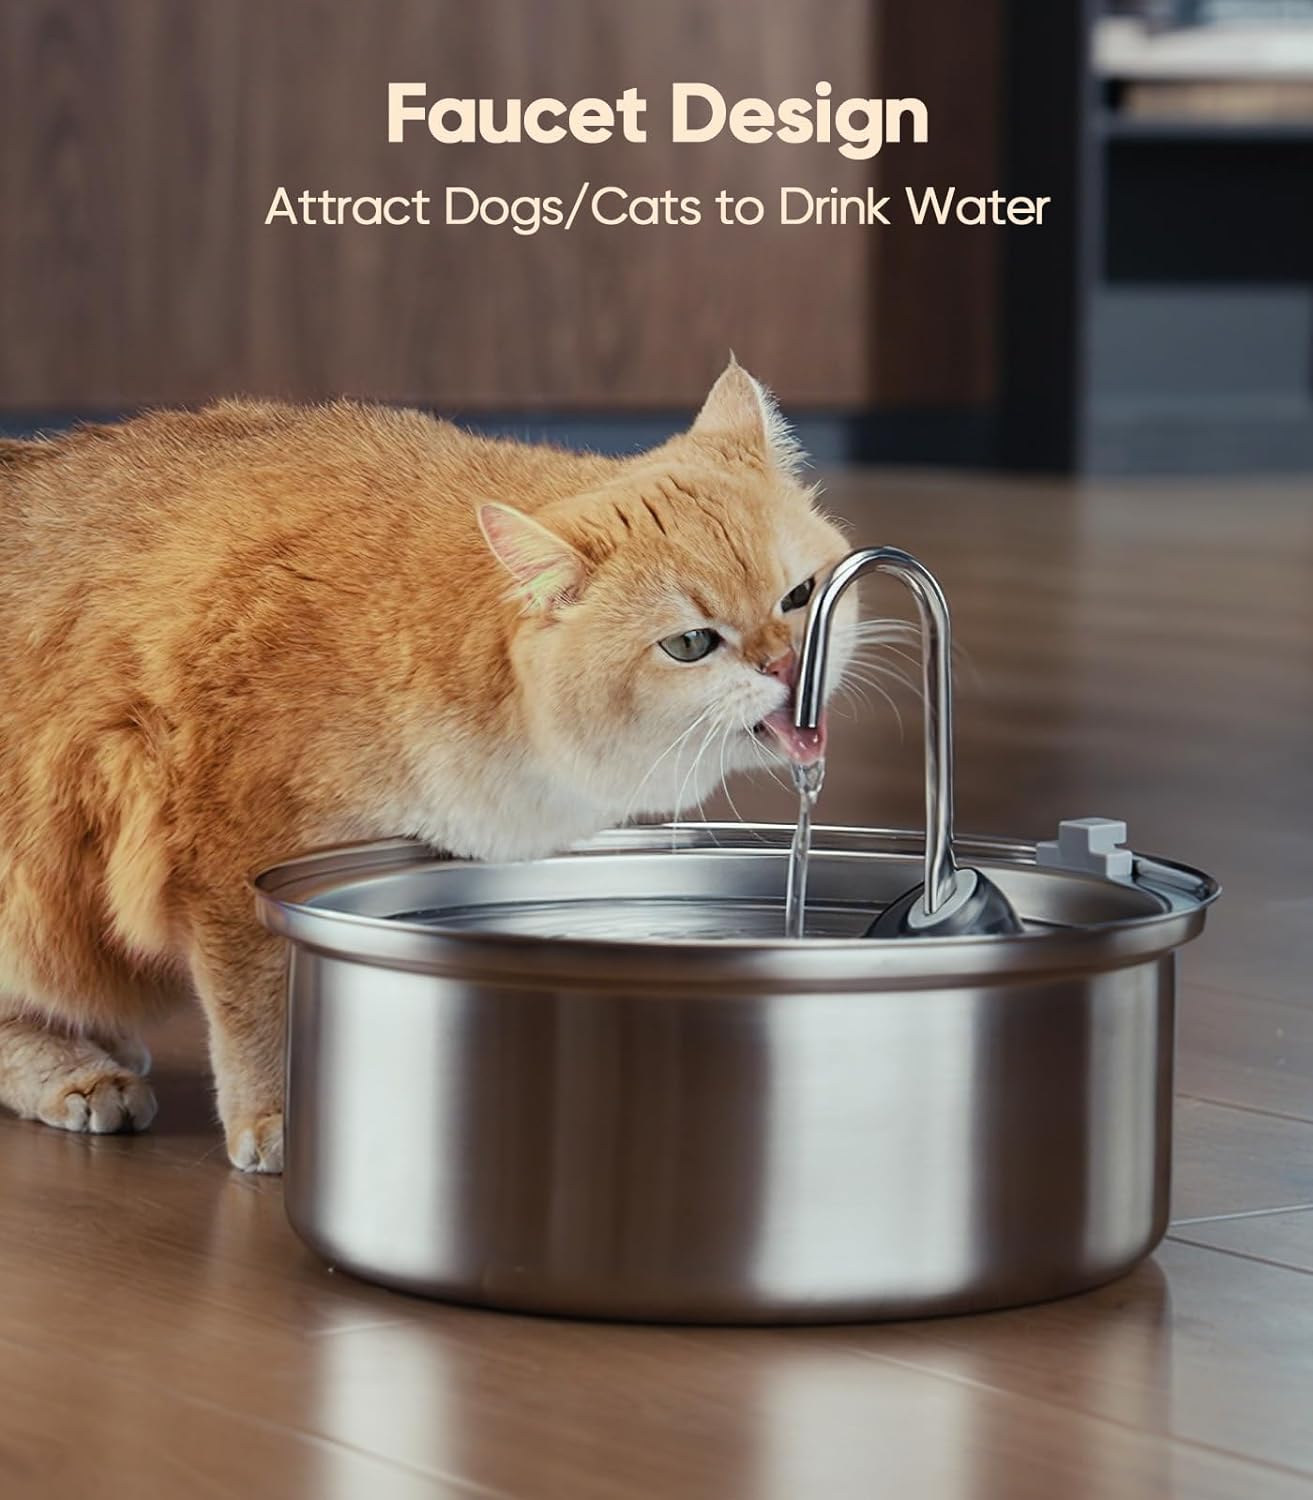 آبخوری خودکار گربه ، آبنمای استیل 7 لیتری ، با فیلتر سه گانه و پمپ ایمن هوشمند برند: oneisall کد : F 143